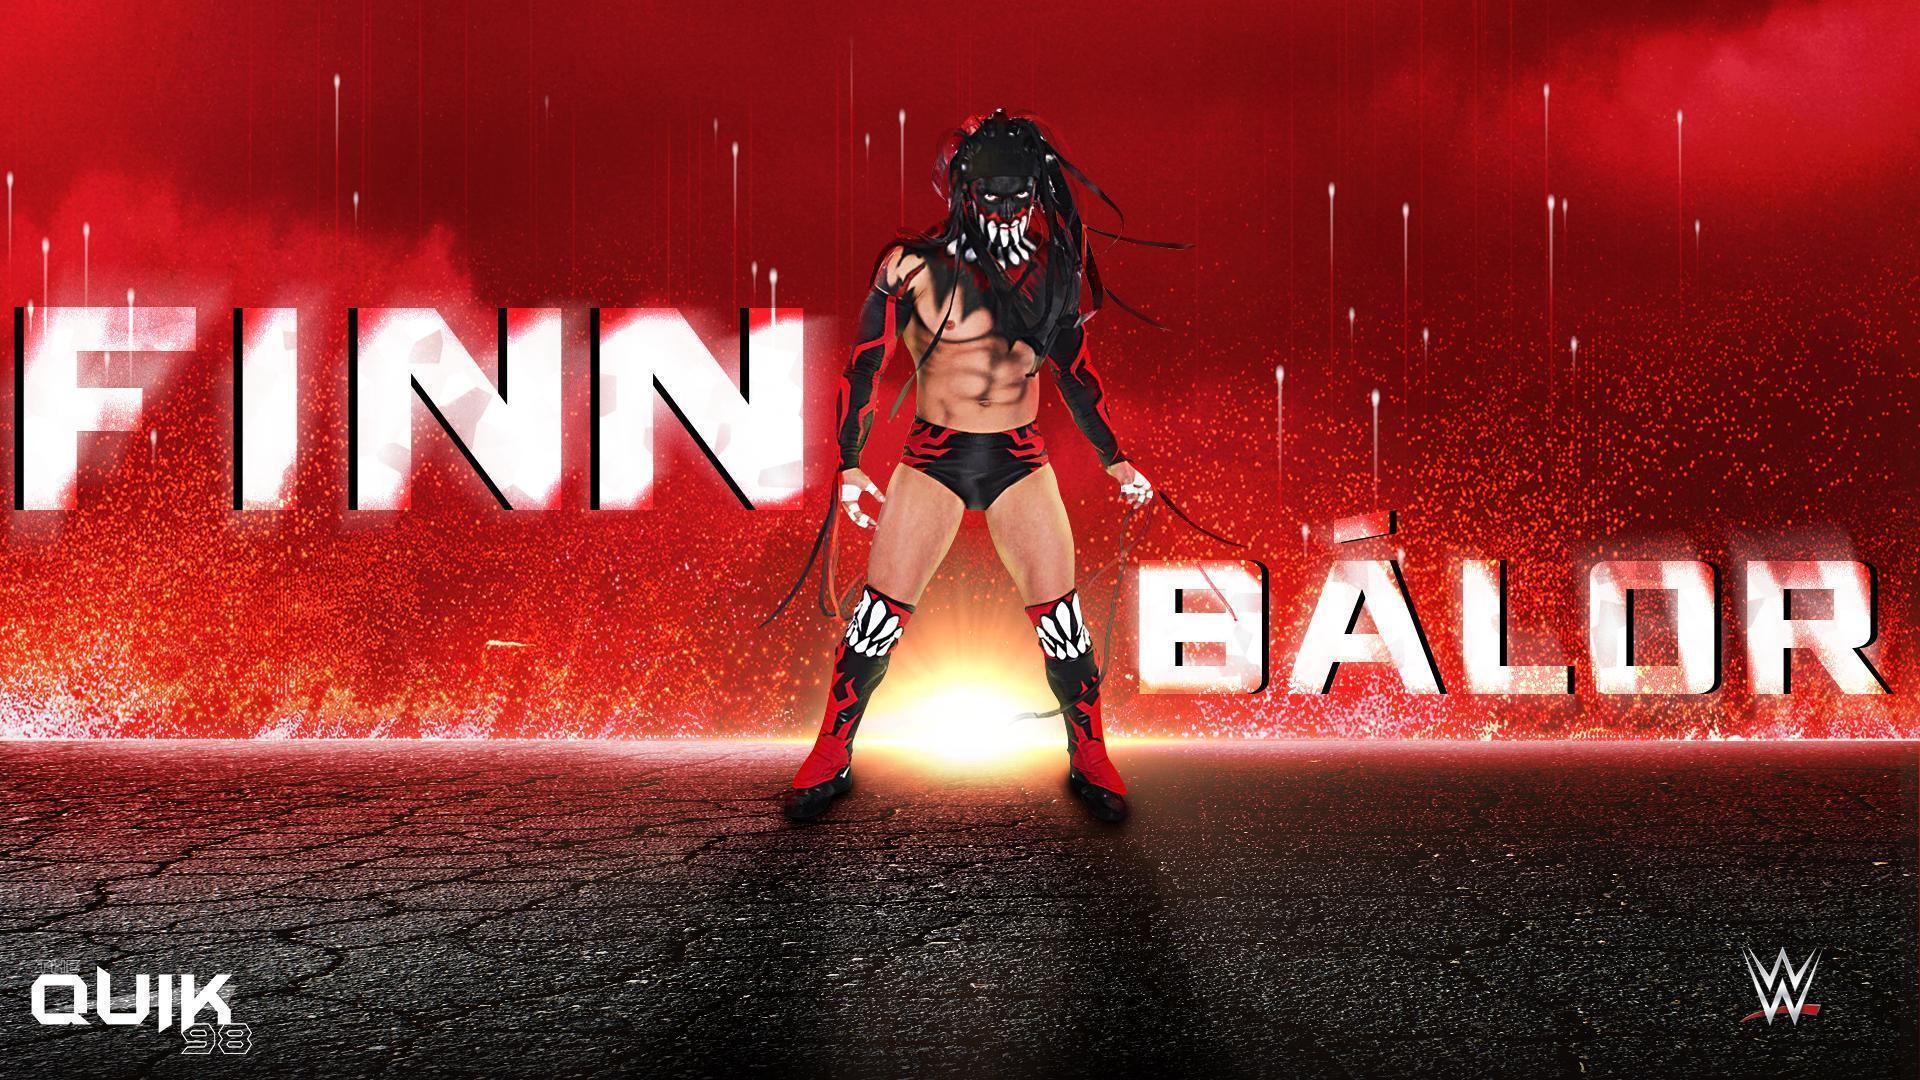 WWE: Finn Bálor Your Breath (by CFO$) + Free Wallpaper